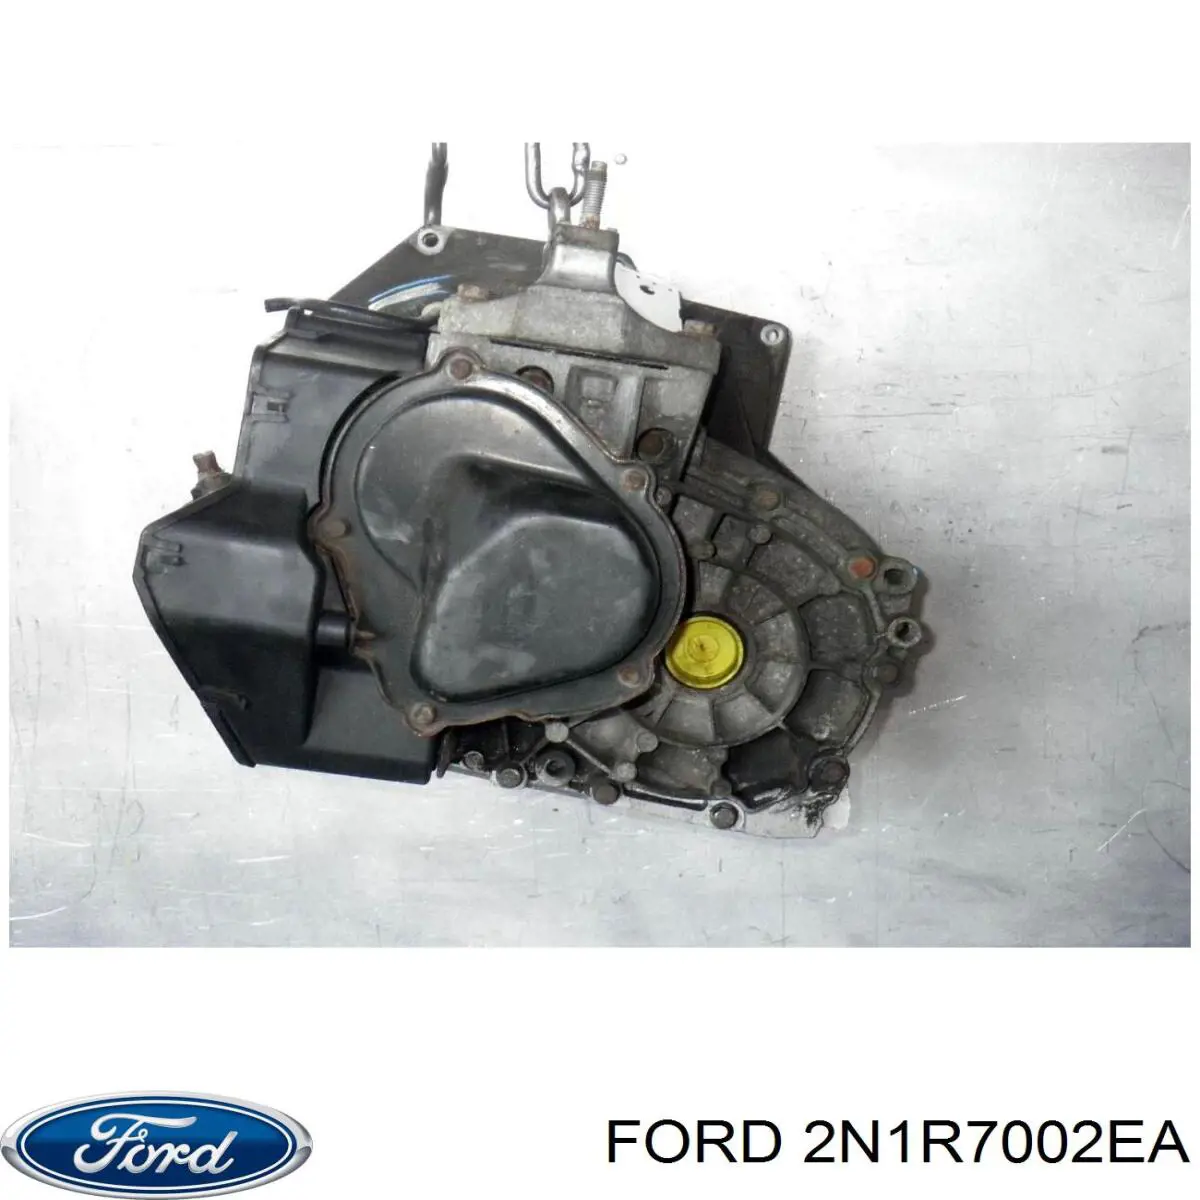 Caja de cambios mecánica, completa para Ford Fiesta 